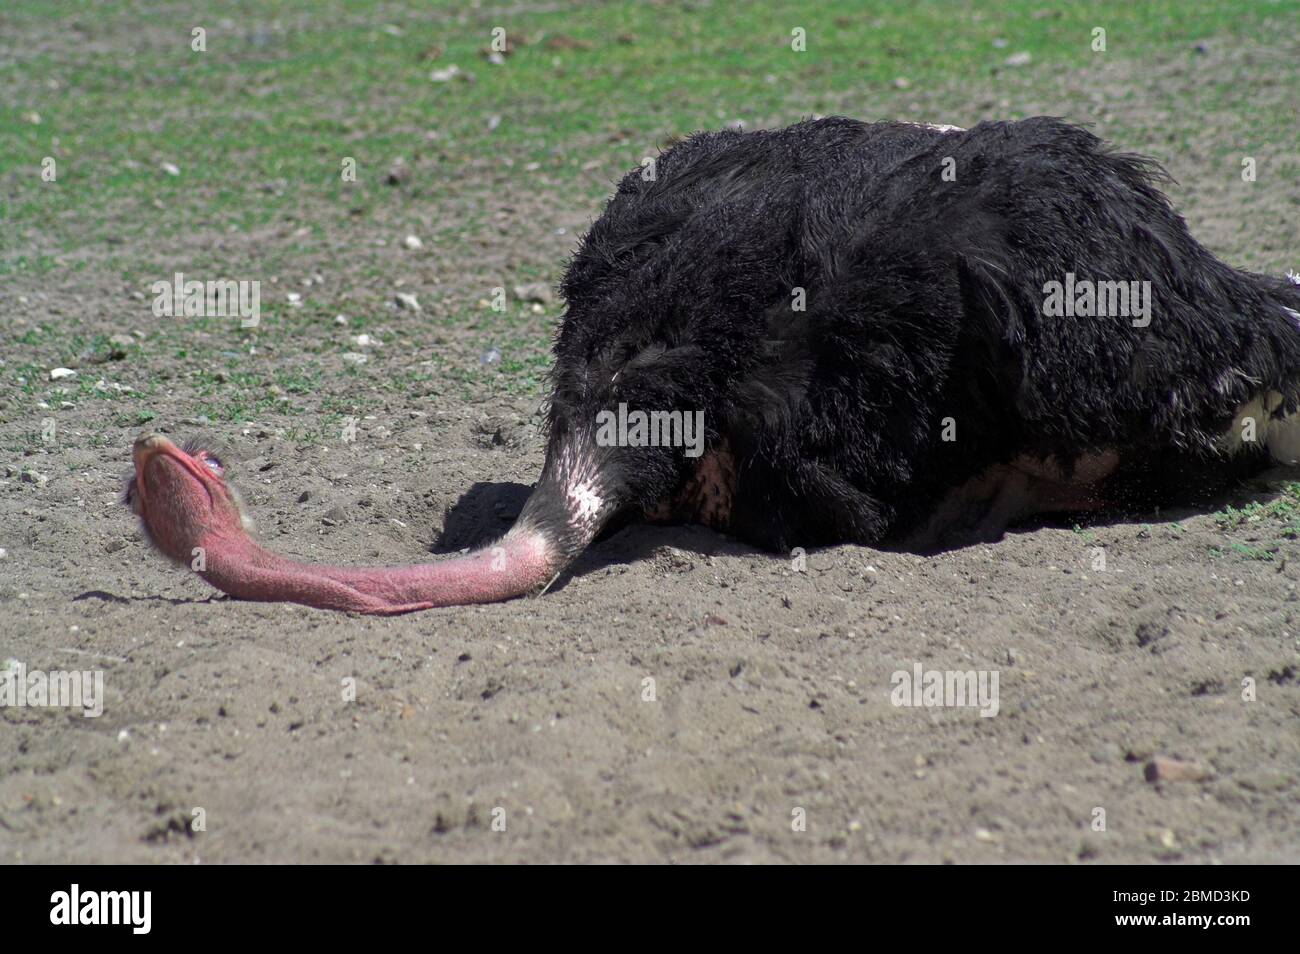 Black ostrich lying on the sand. Schwarzer Strauß, der auf dem Sand liegt. Leżący na piasku czarny struś. 說謊在沙子的黑駝鳥。 Stock Photo